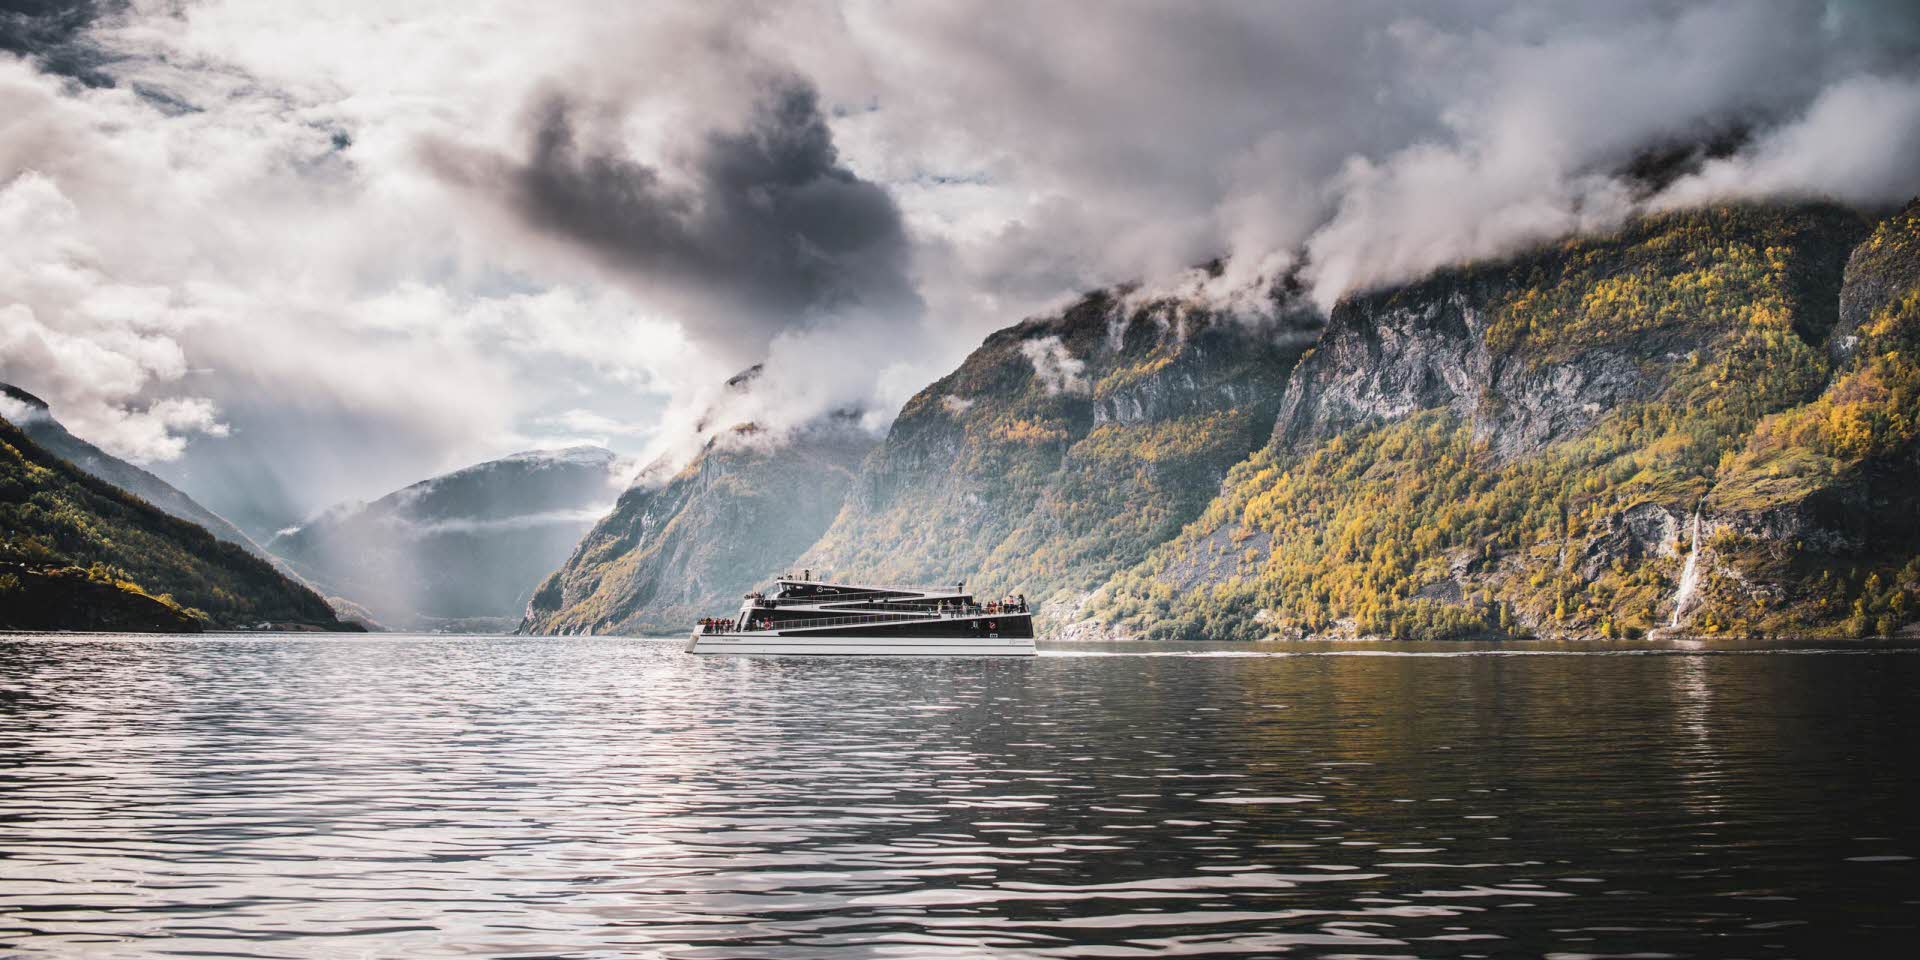 秋に、ユネスコに登録されている有名なネーロイフィヨルド(Naeroyfjord)で曇り空と凪の中を航行するフューチャーオブフィヨルドが遠くに見えます